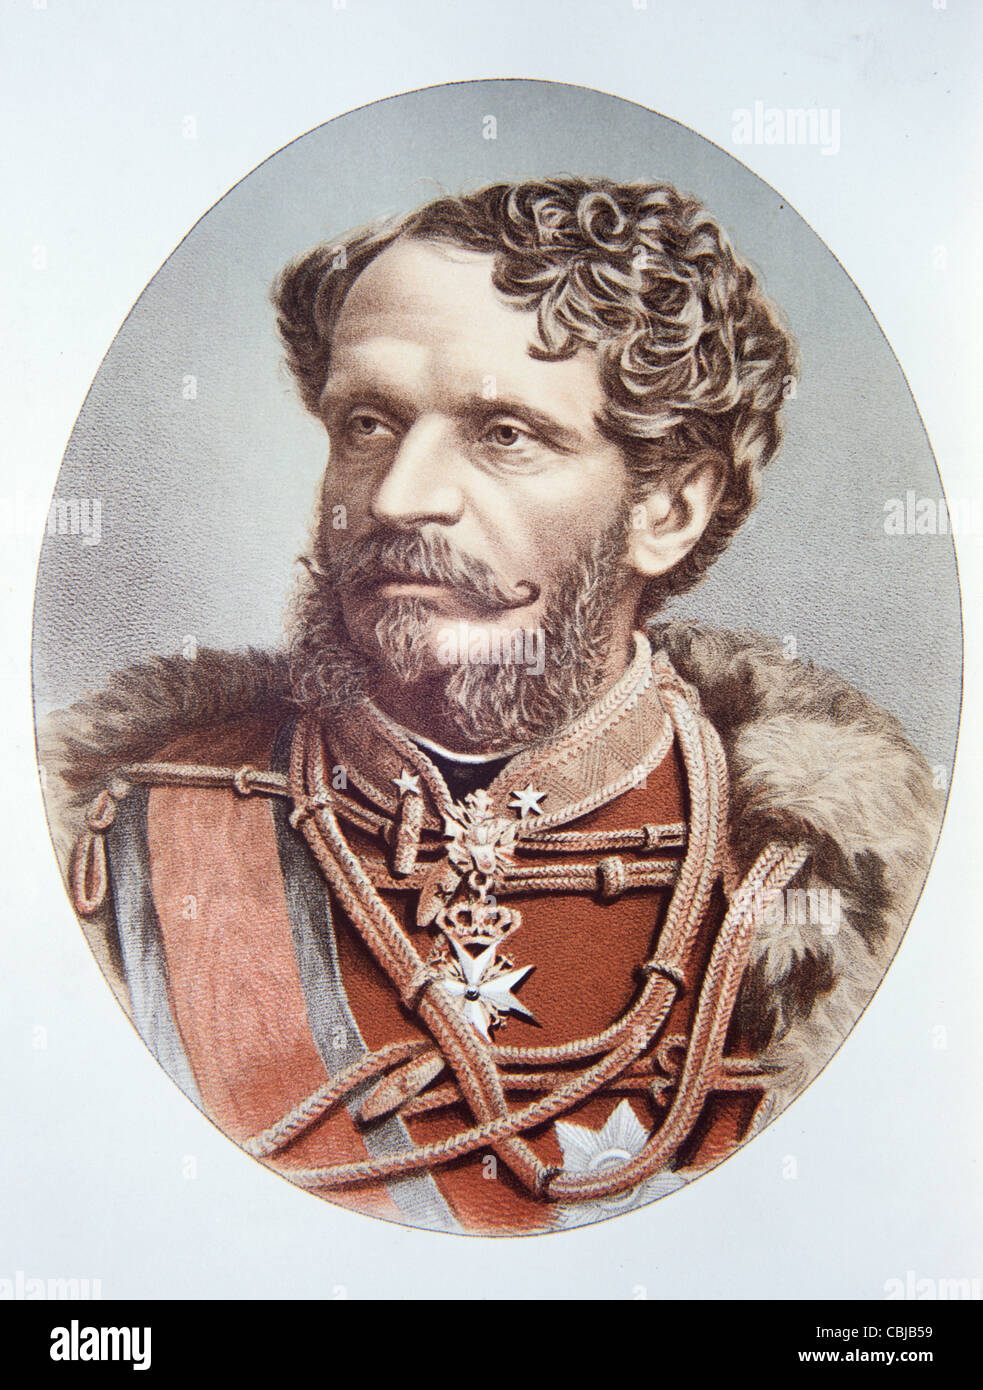 Portrait du comte Gyula Andrassy (1823-90) ou de Julius Andrassy, homme d'État et homme politique hongrois, Premier ministre (1867-71). Illustration ancienne ou gravure Banque D'Images